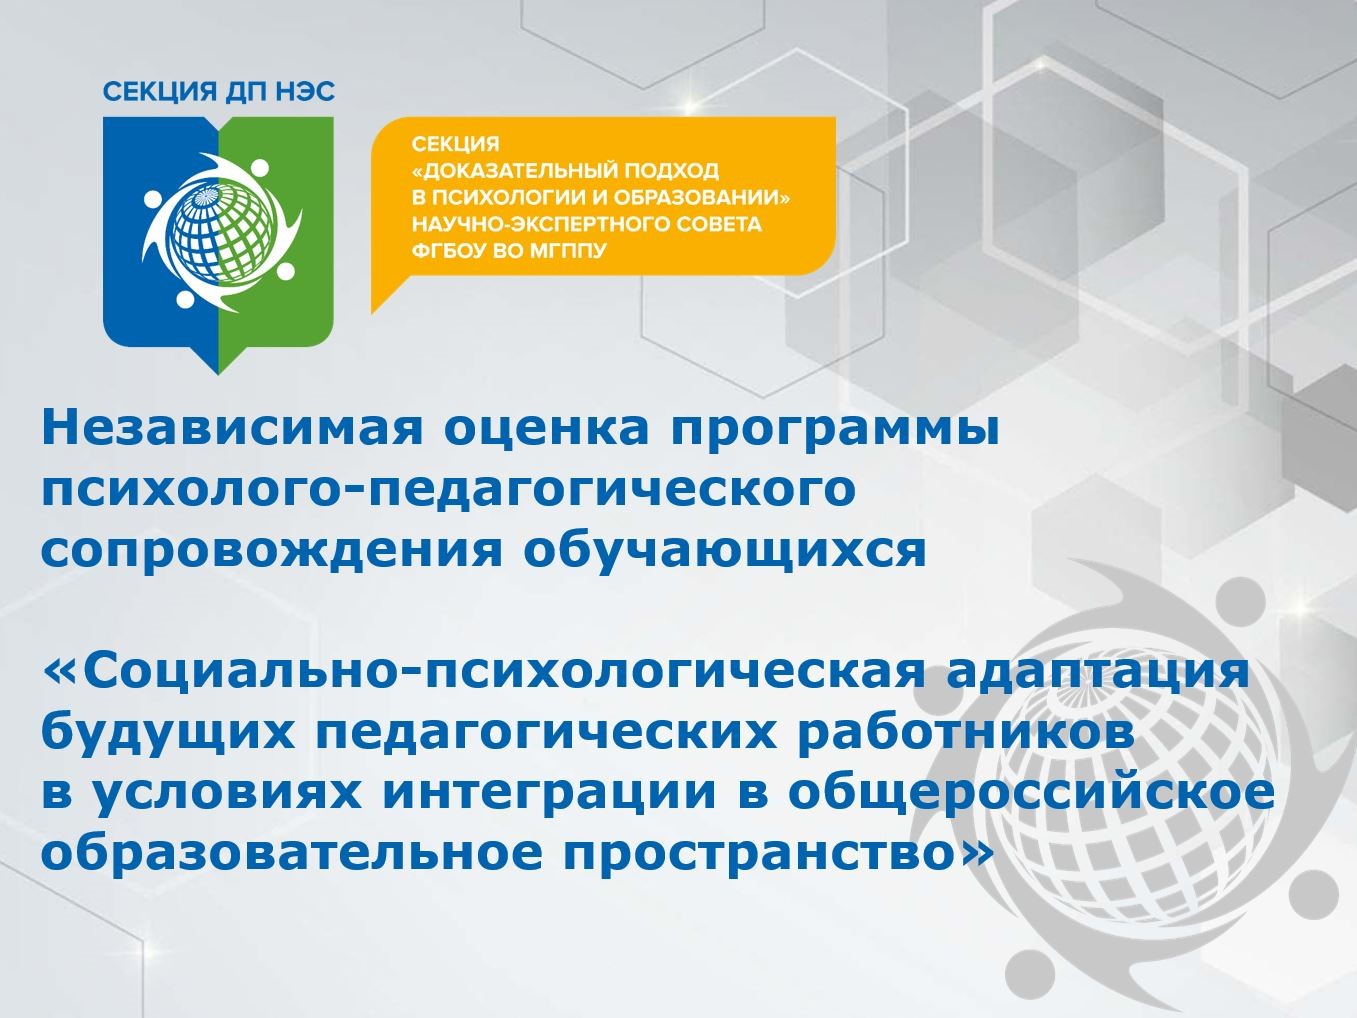 Секция ДП НЭС МГППУ провела независимую экспертизу программы    Азовского государственного педагогического университета 